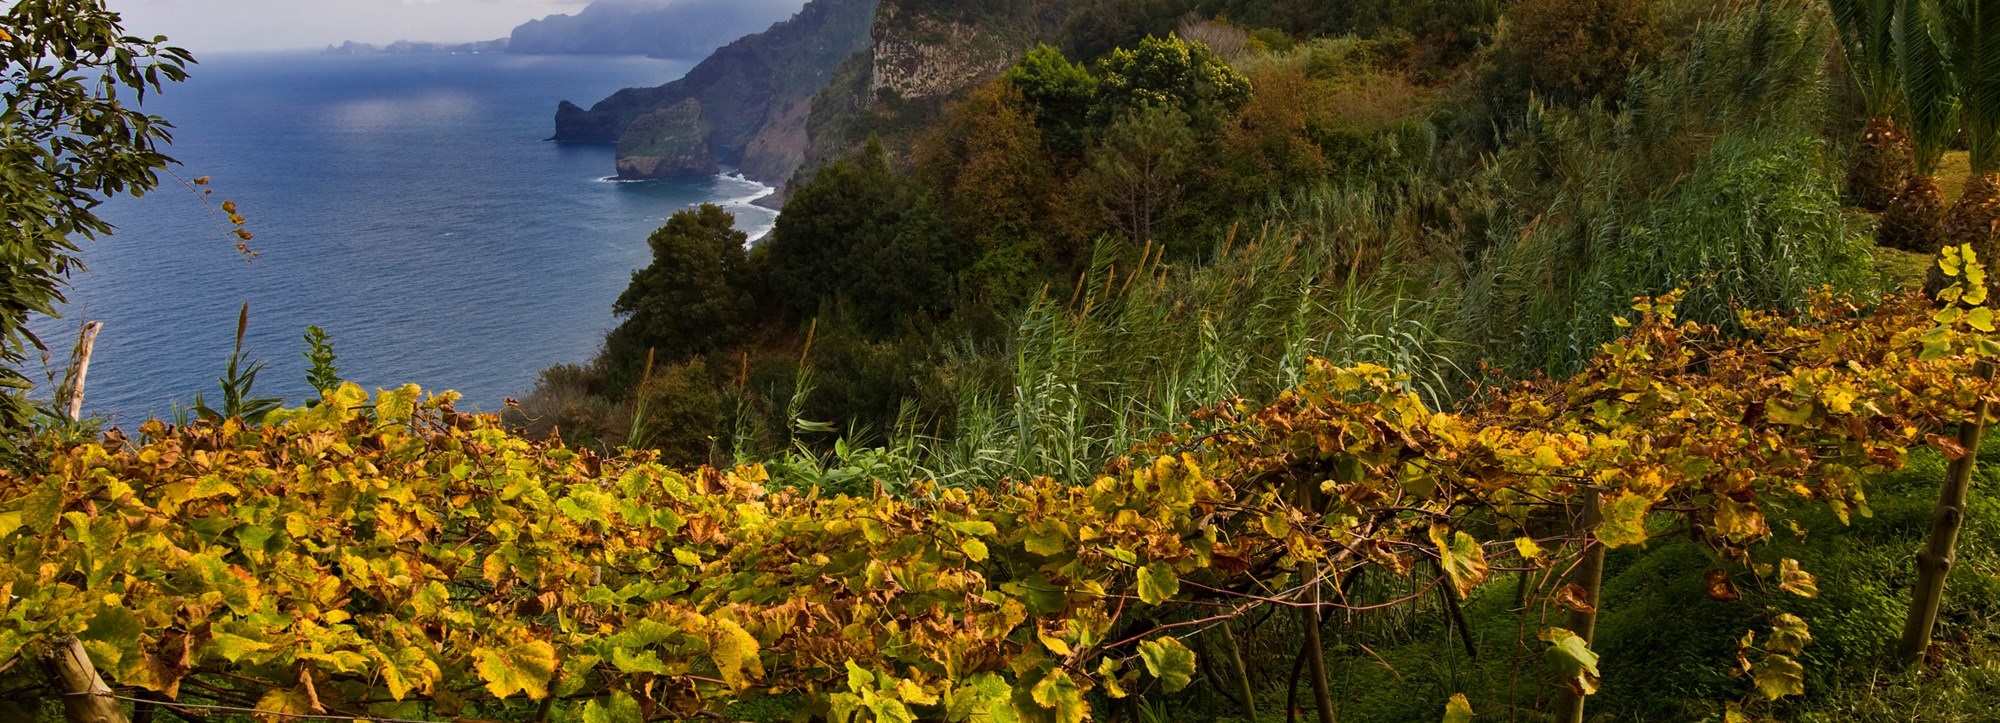 Madeira – vin från vulkanön i Atlanten